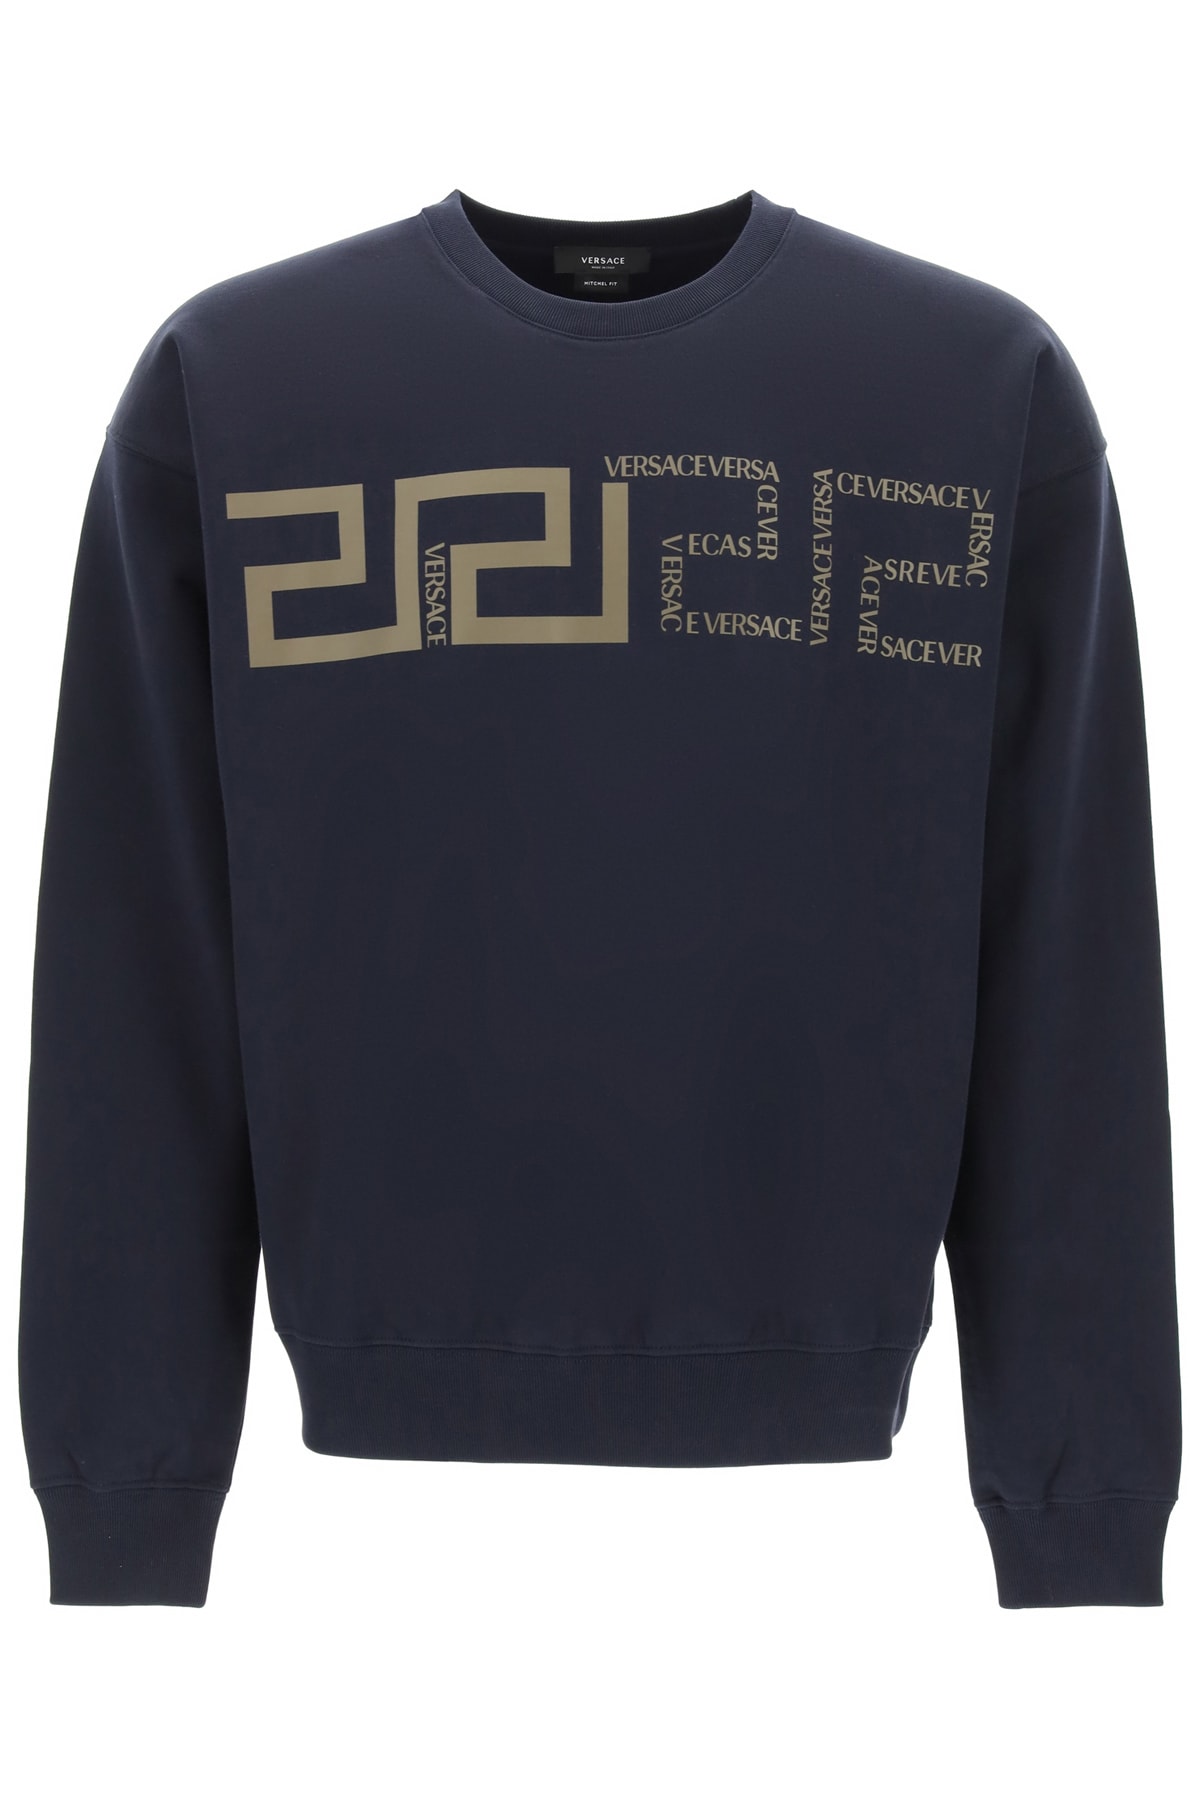 Versace Greek Print Sweatshirt